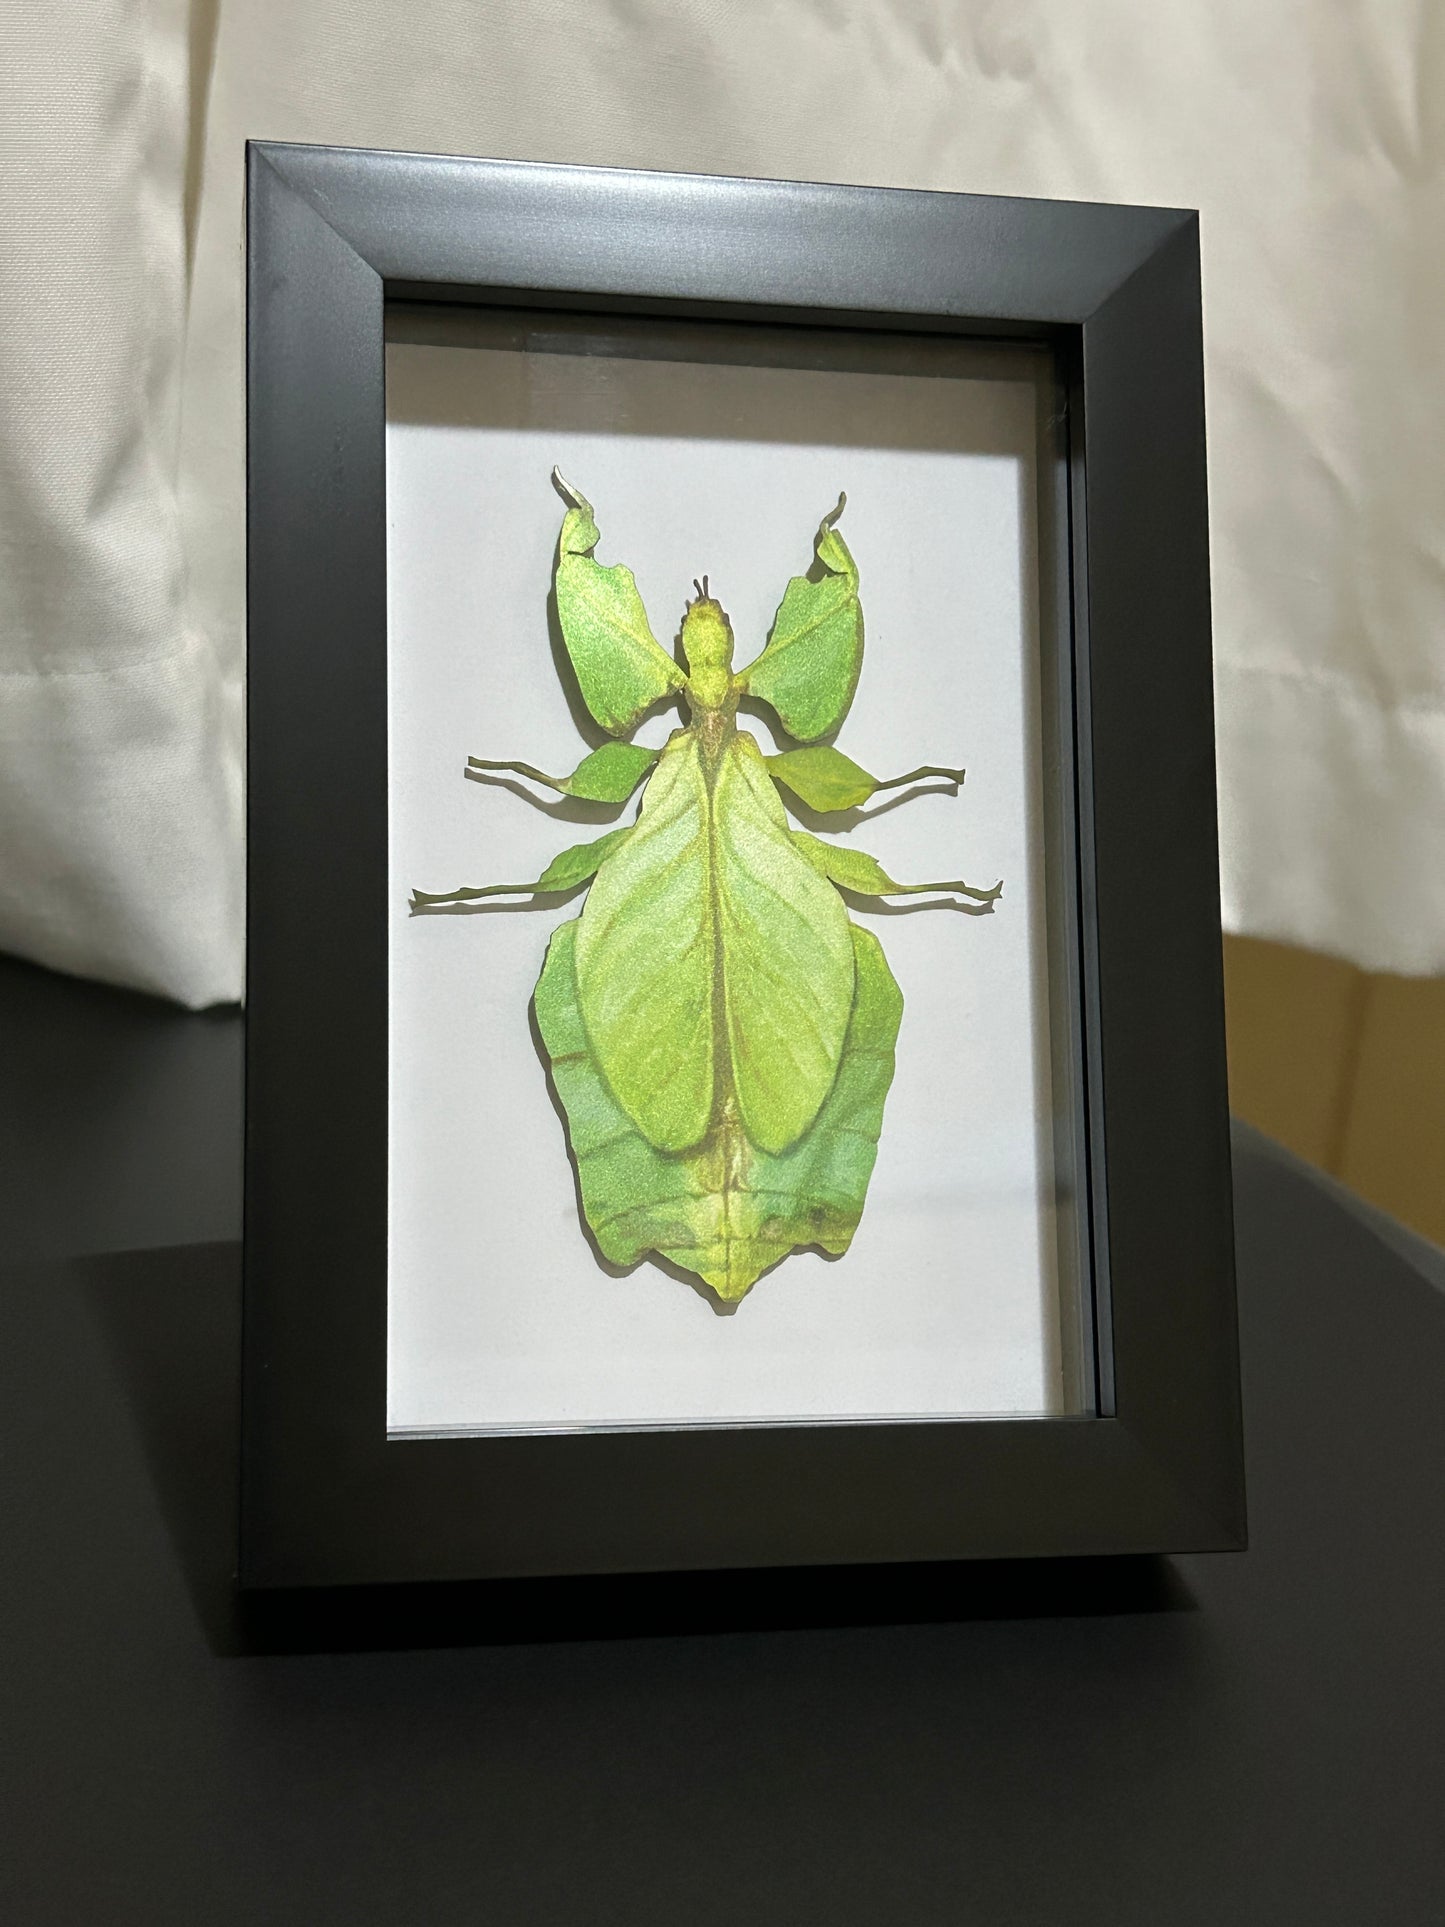 Replica Leaf Insect (Phyllium giganteum) Frame